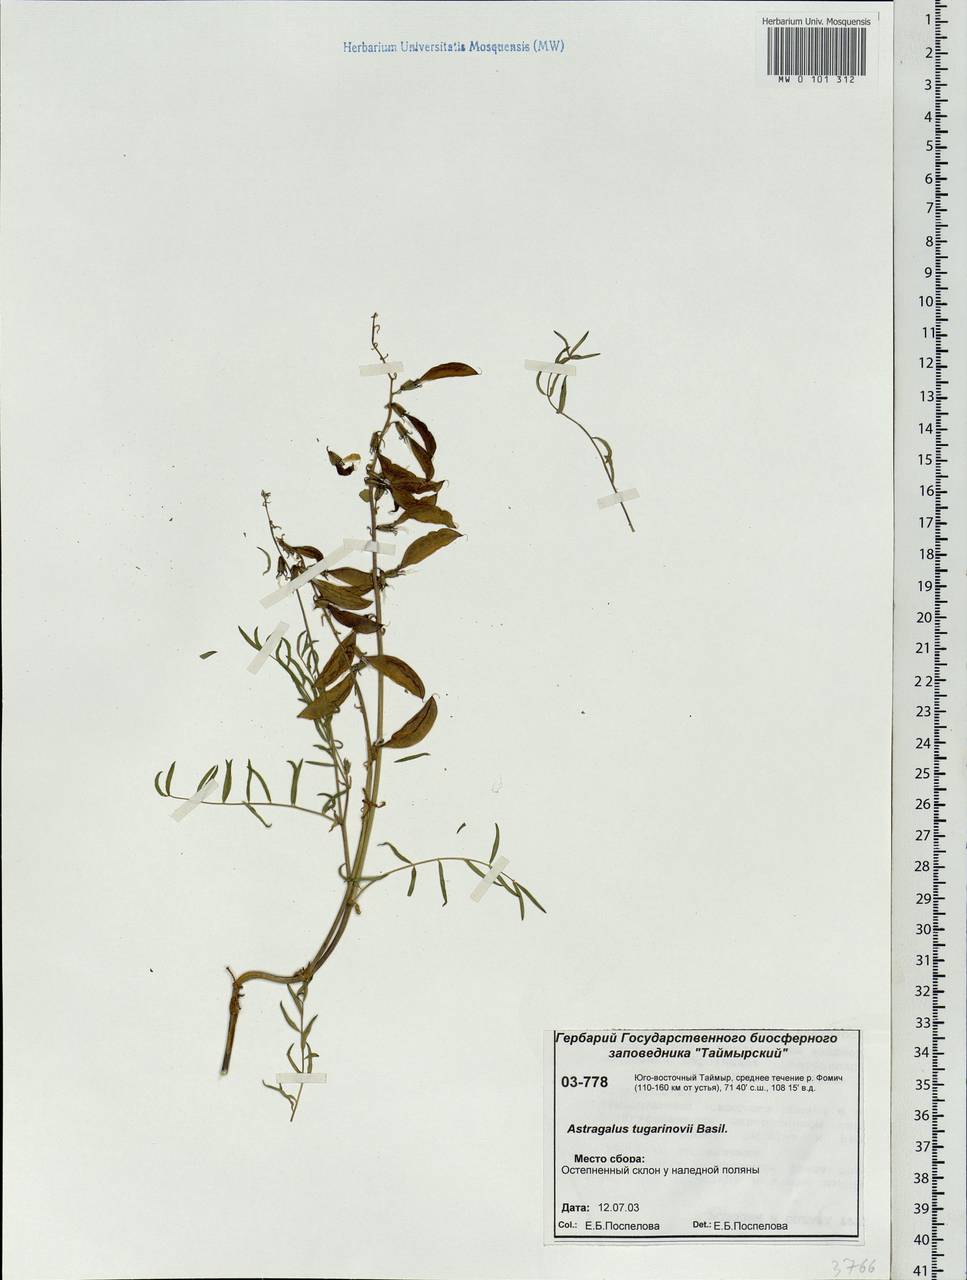 Astragalus tugarinovii Basil., Siberia, Central Siberia (S3) (Russia)